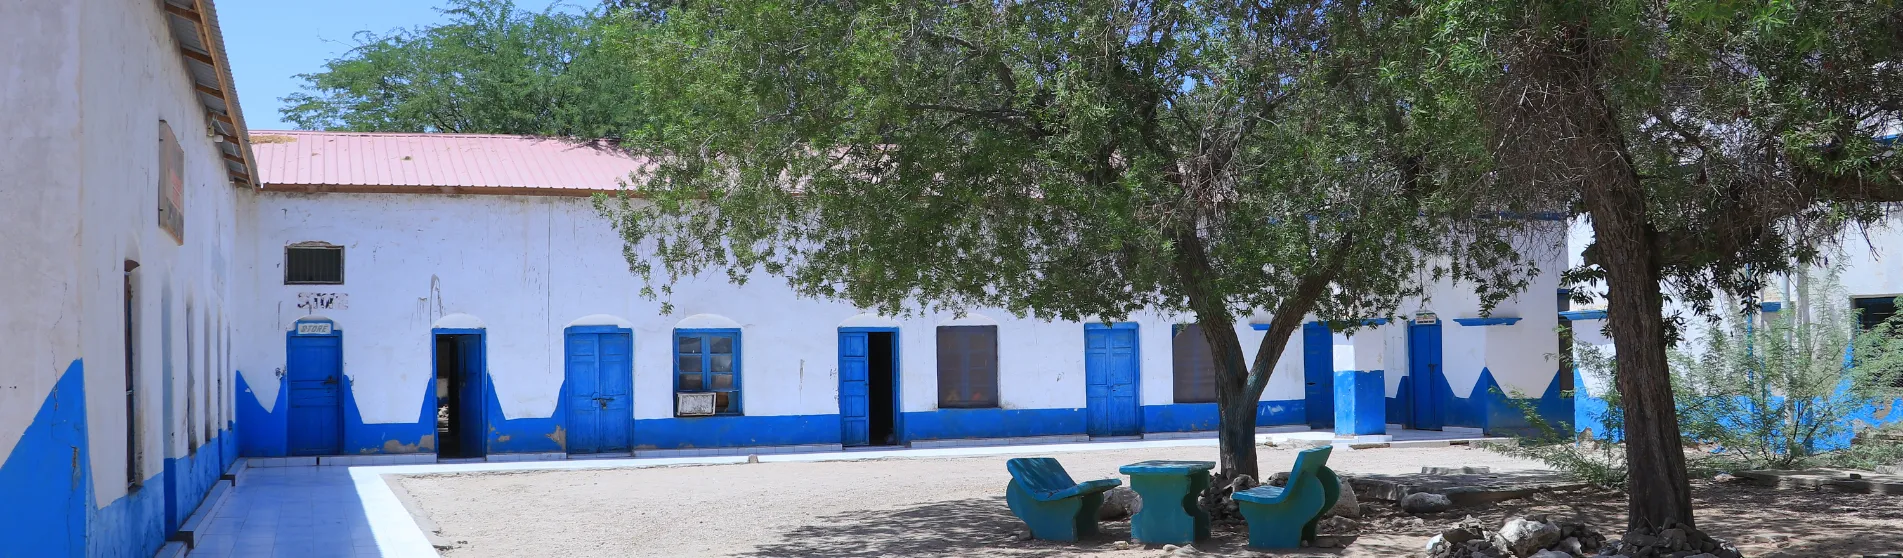 Berbera Hospital courtyard Somaliland_web banner